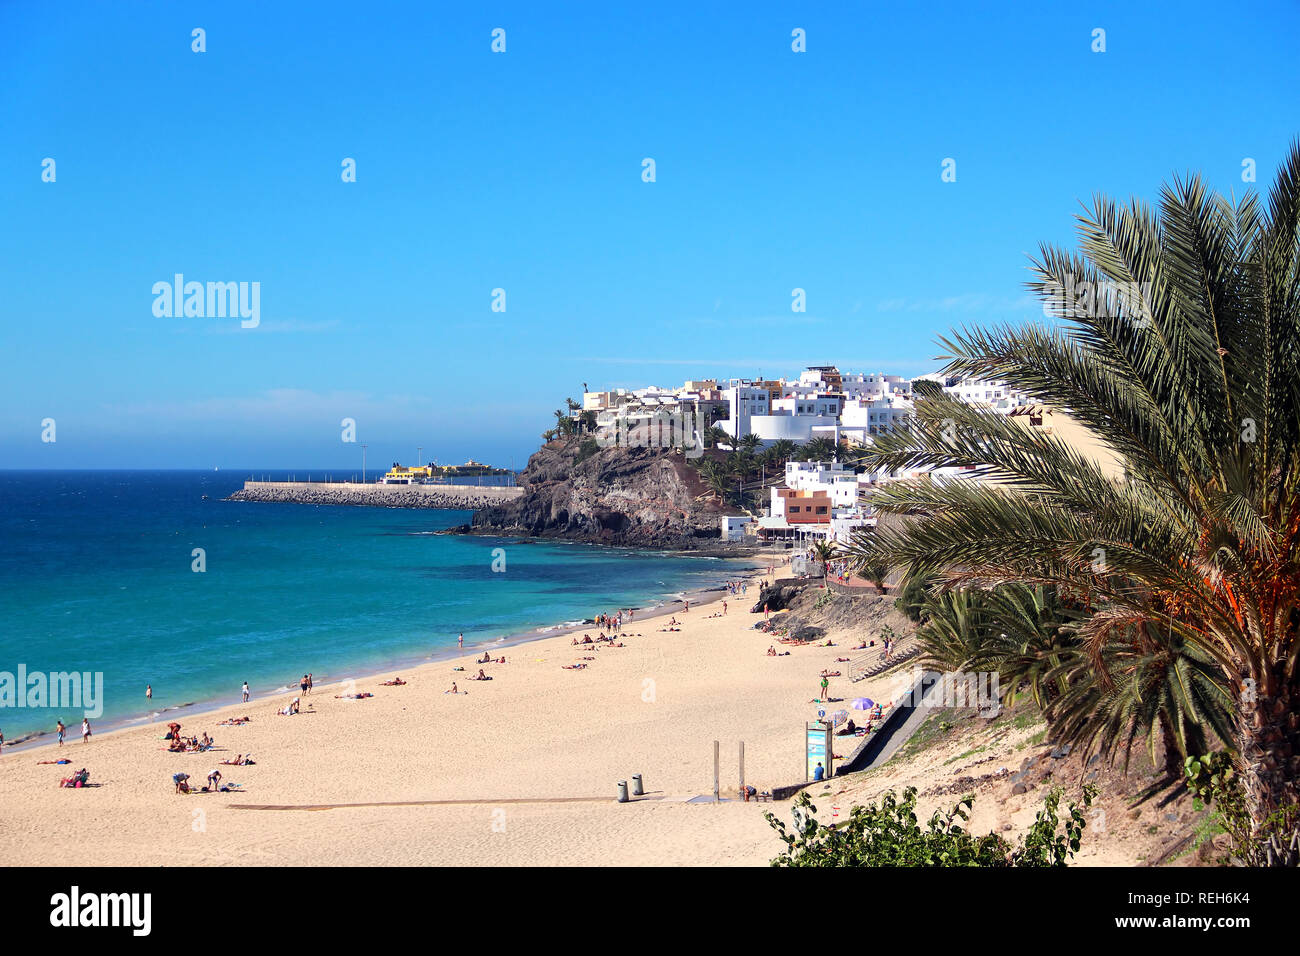 La plage et de la ville de Morro del Jable, Fuerteventura, îles Canaries, Espagne Banque D'Images